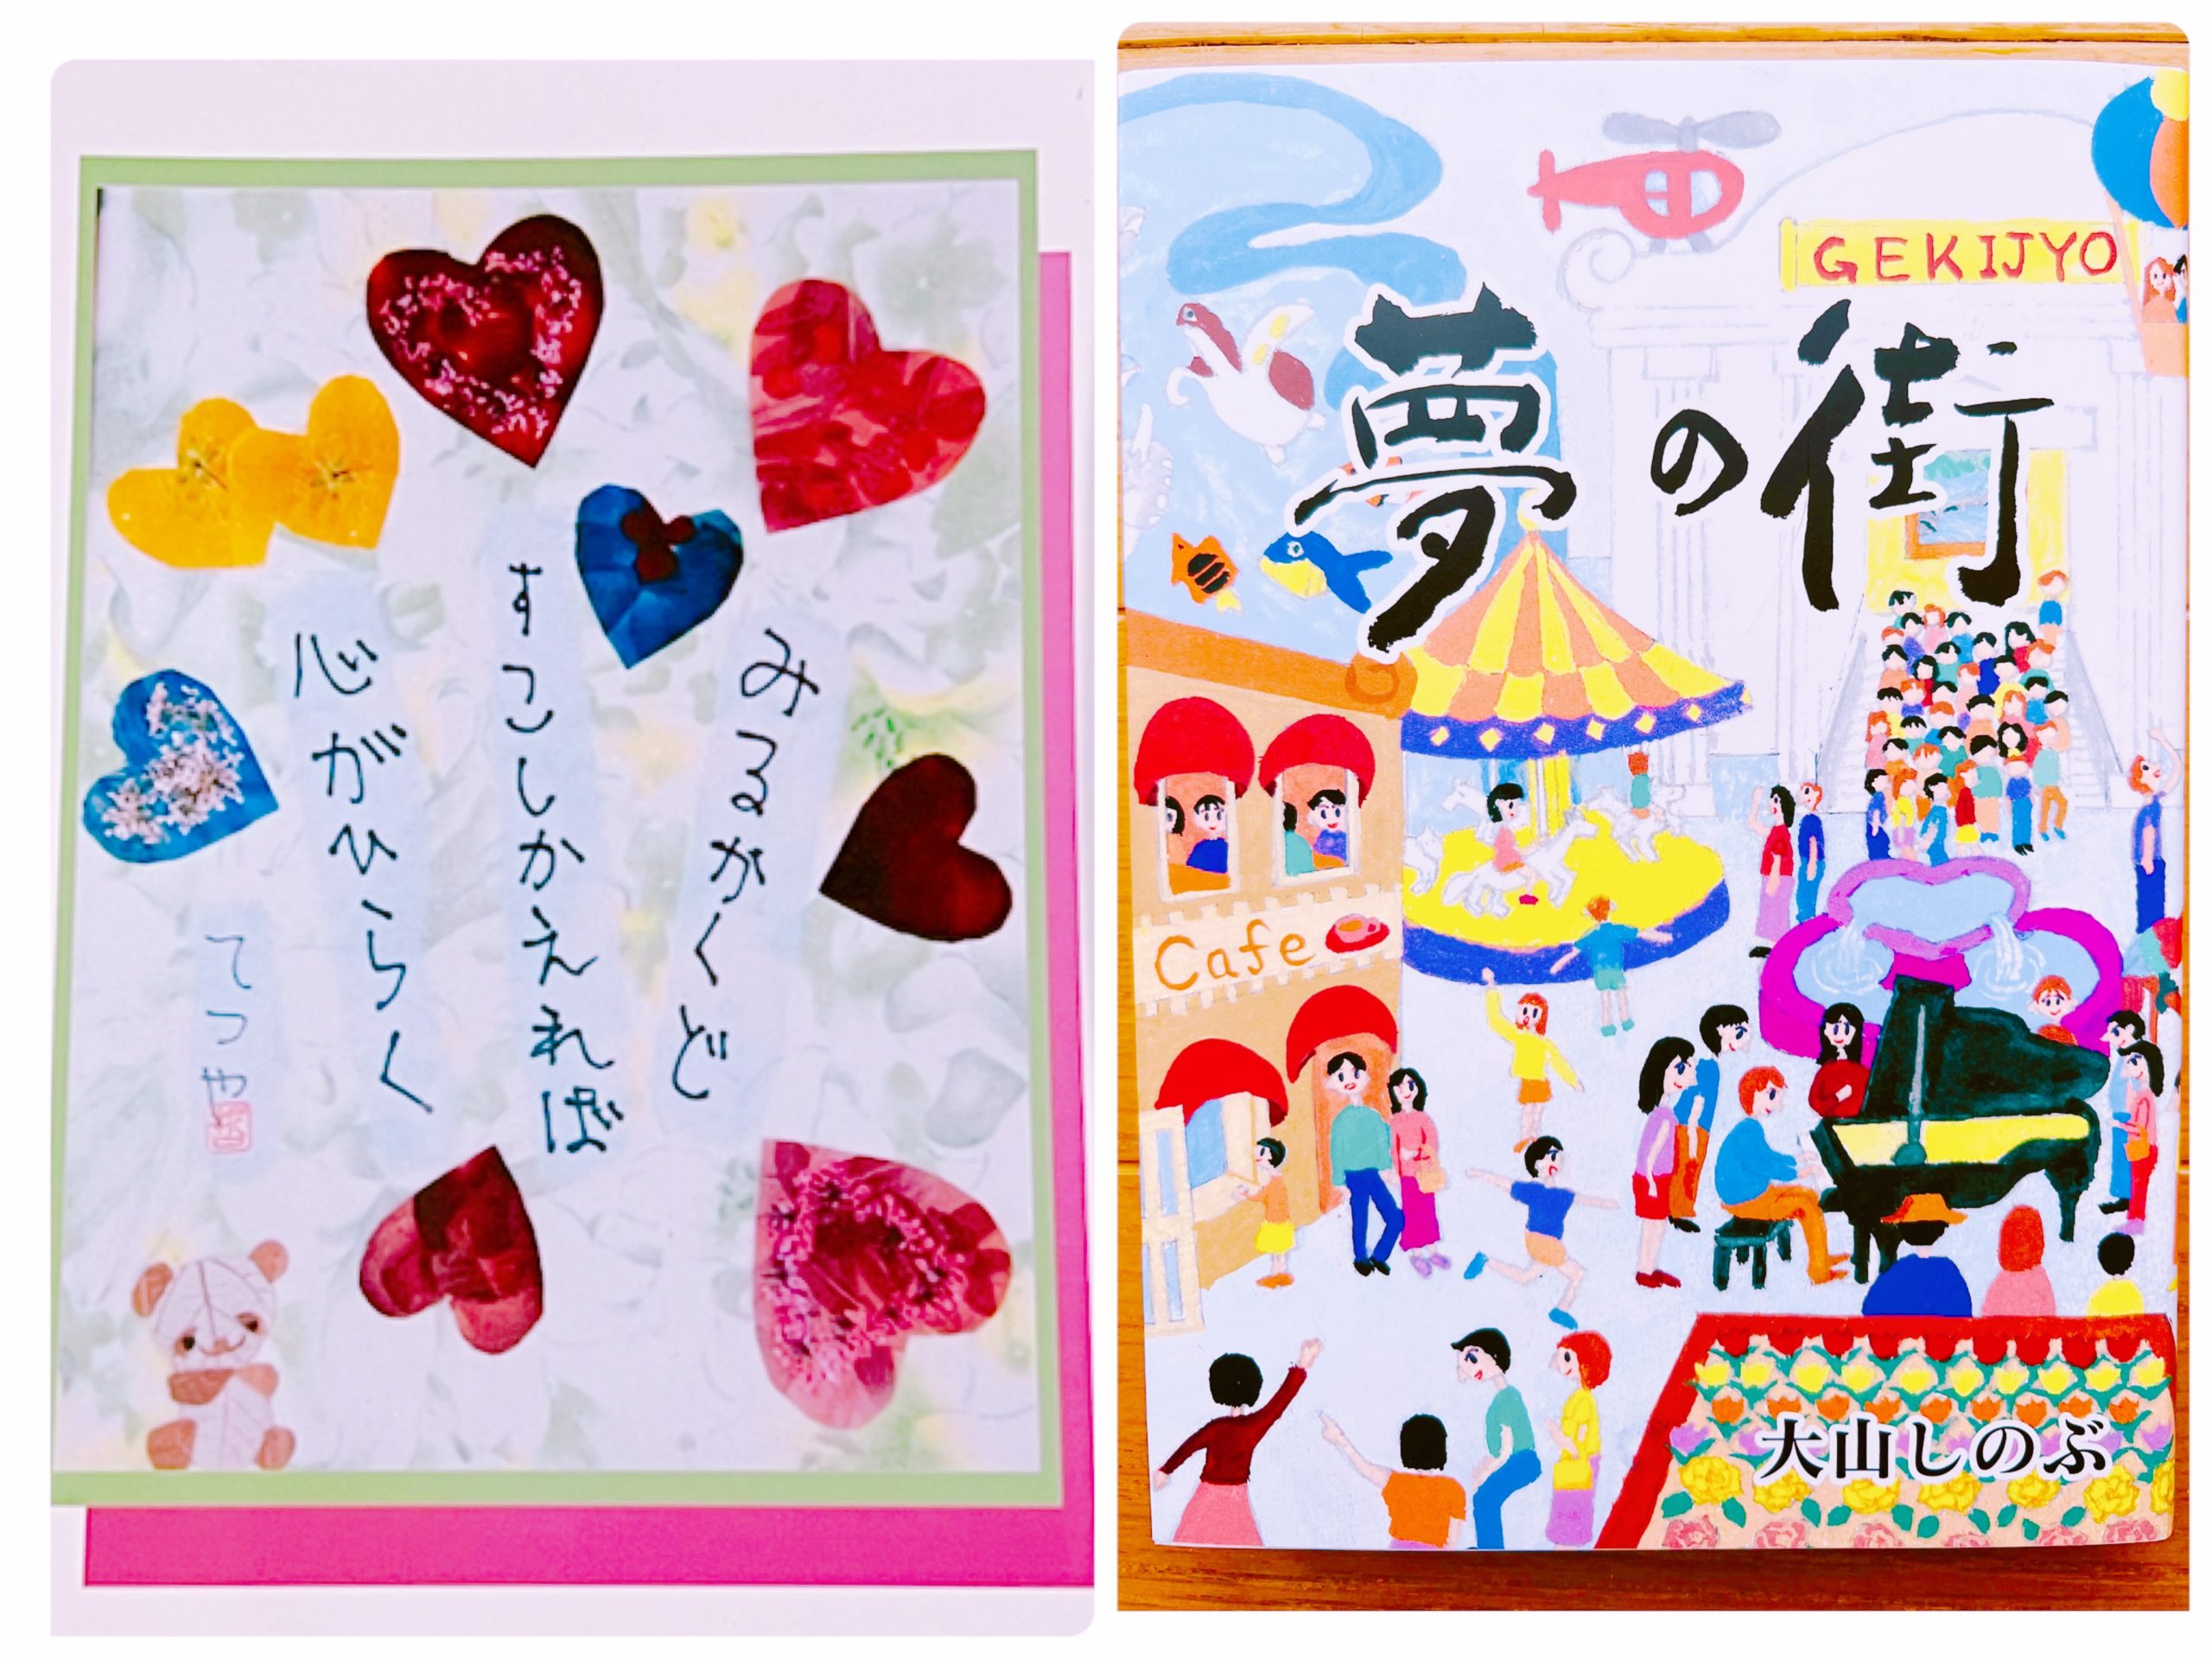 左：岡﨑悦子さん作 押し花と息子さん（哲也君）の川柳を絵はがきにしたもの
右：大山姉妹(りえさん、しのぶさん)の著者 夢の街